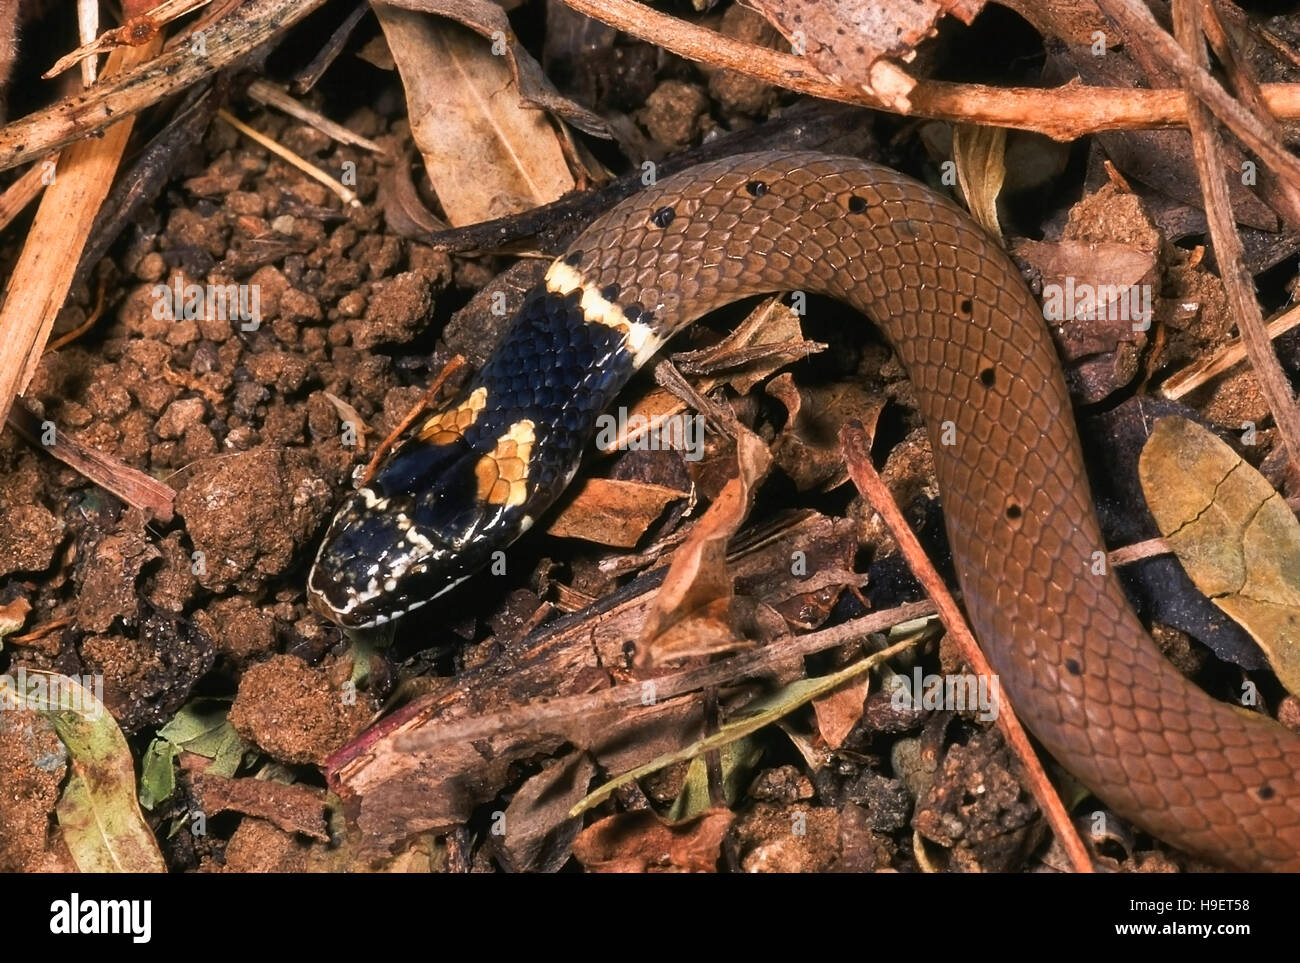 DUMERIL'S BLACK-HEADED SNAKE Sibynophis subpunctatus. Head and neck. Non venomous. Rarely available. Specimen from Pune, Maharashtra, India. Stock Photo